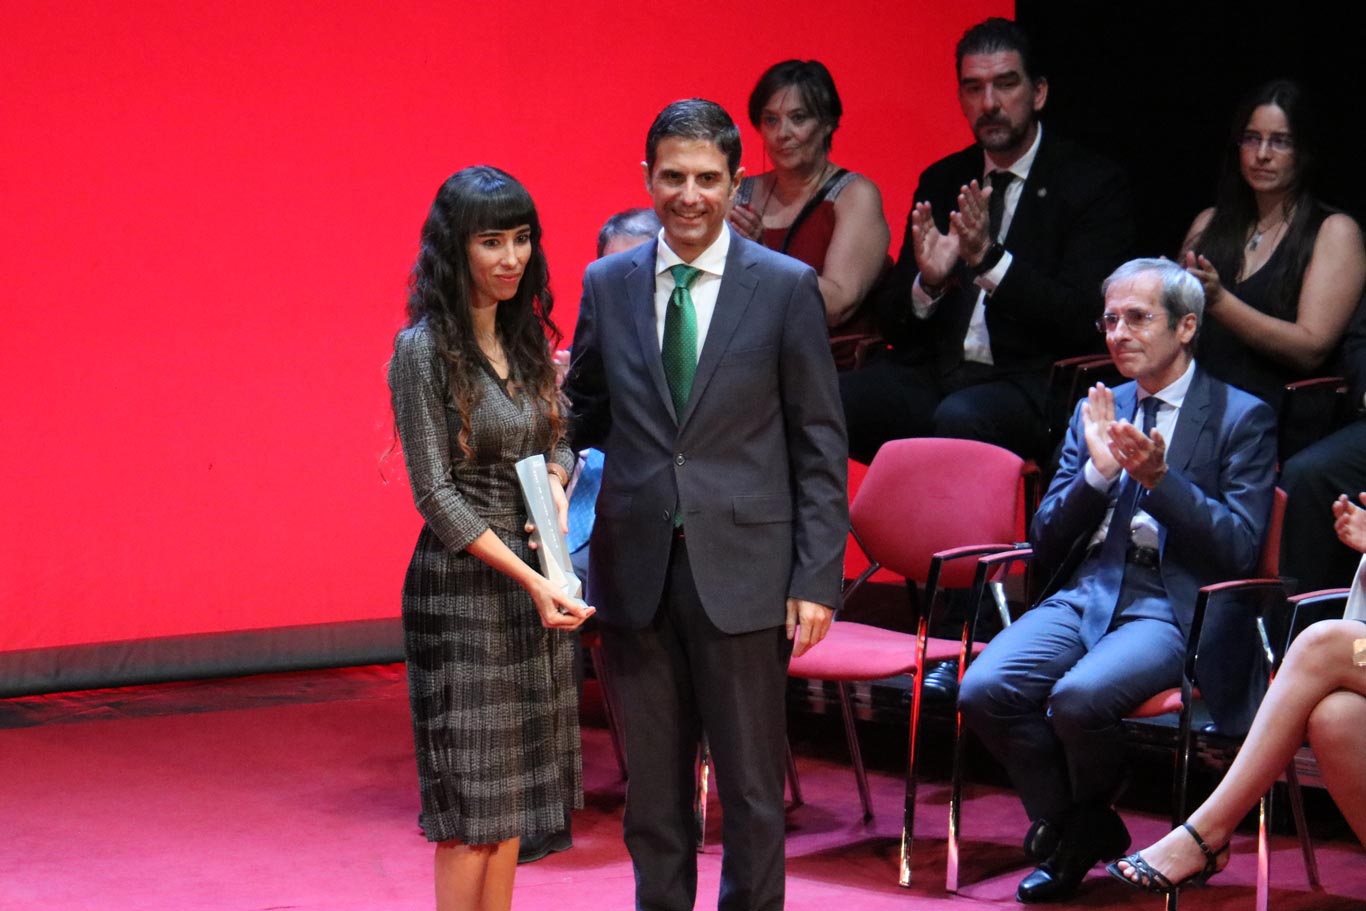 Premios Ciudad de Alcalá 2017